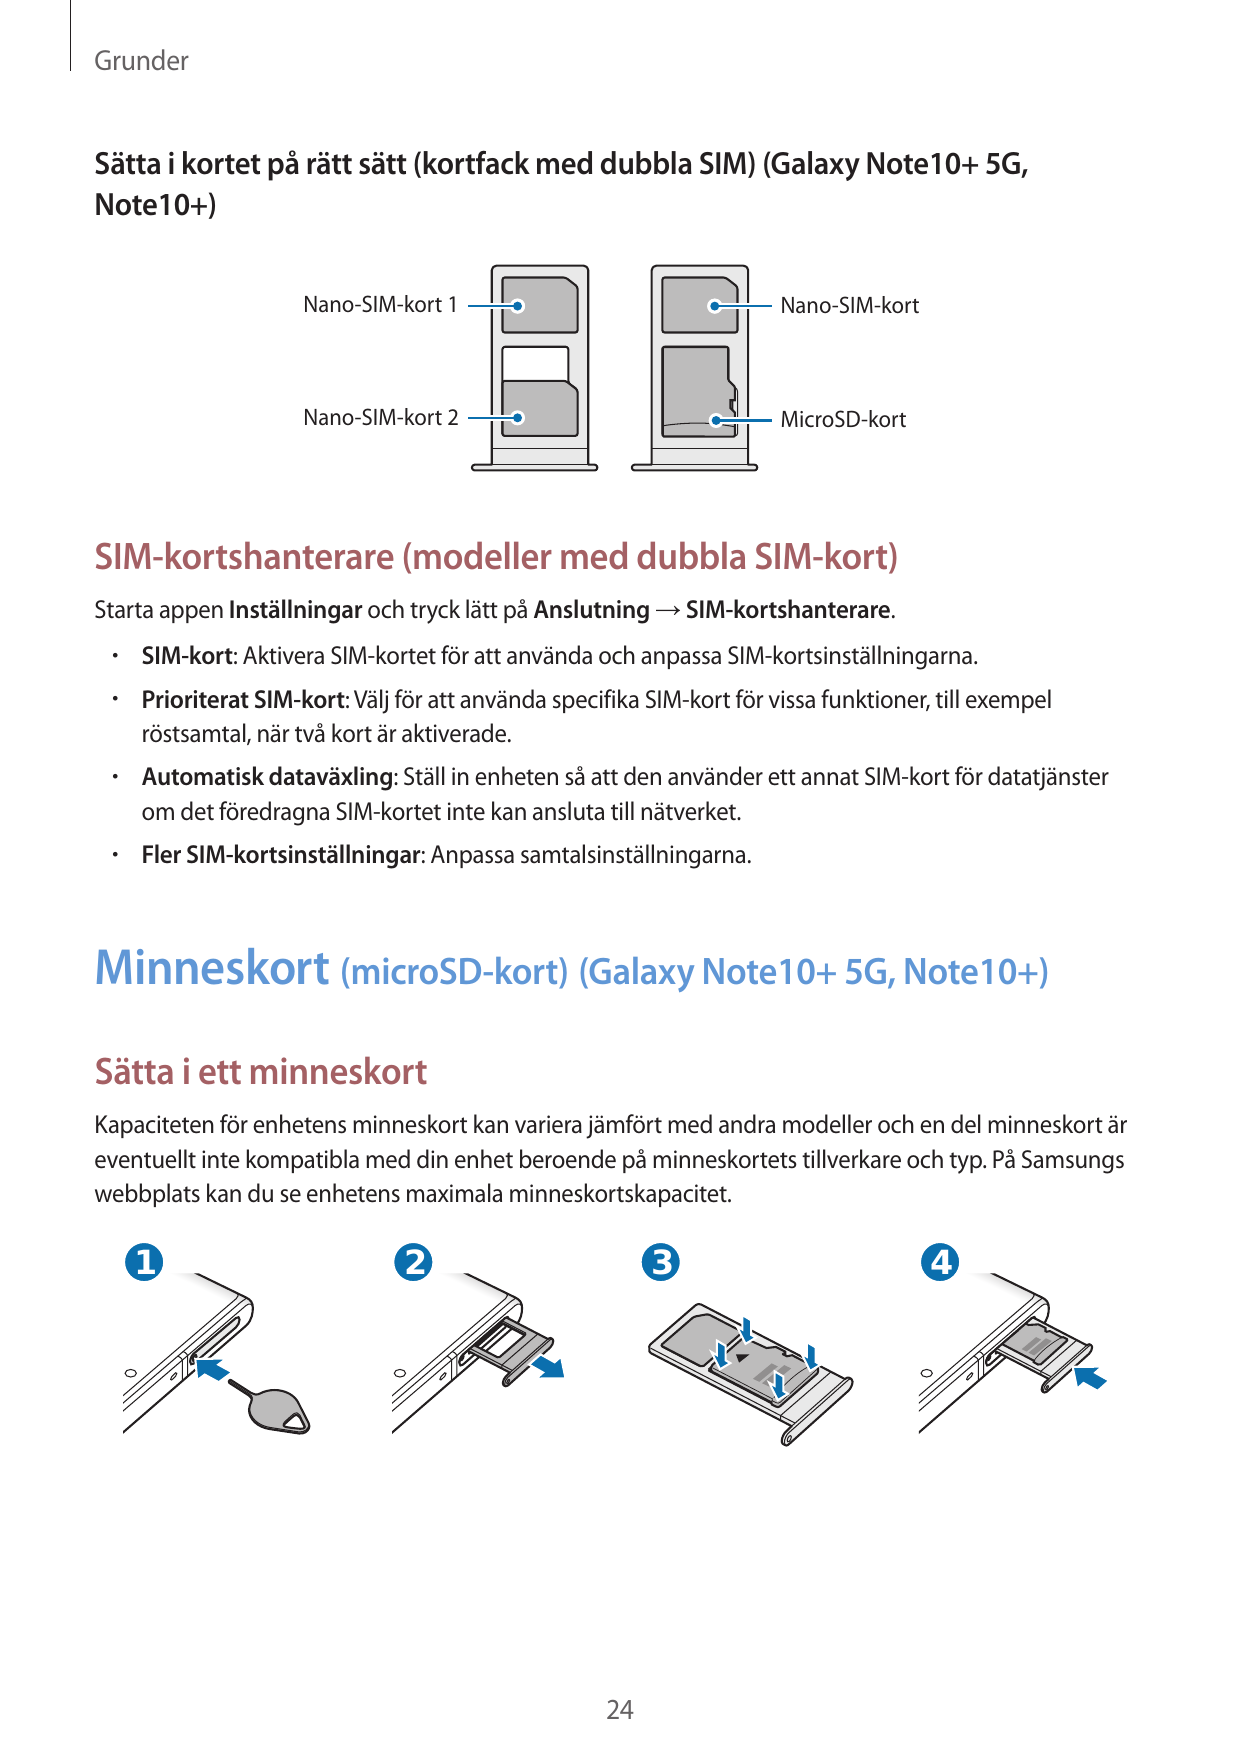 GrunderSätta i kortet på rätt sätt (kortfack med dubbla SIM) (Galaxy Note10+ 5G,Note10+)Nano-SIM-kort 1Nano-SIM-kortNano-SIM-kor